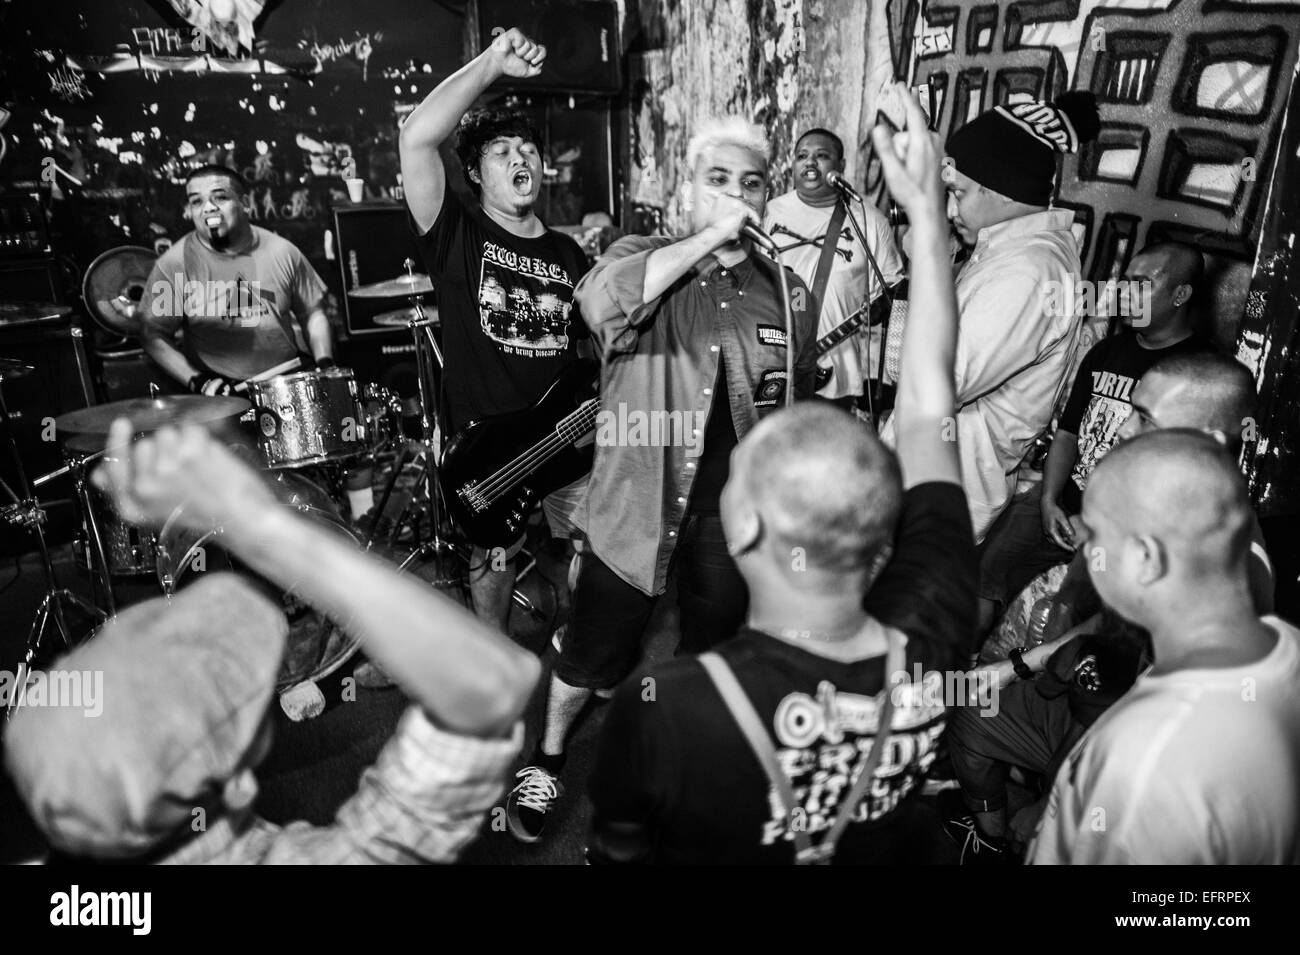 Punk band preforming at anti-fascist gig at the Rumah Api venue in Ampang, Kuala Lumpur. Stock Photo